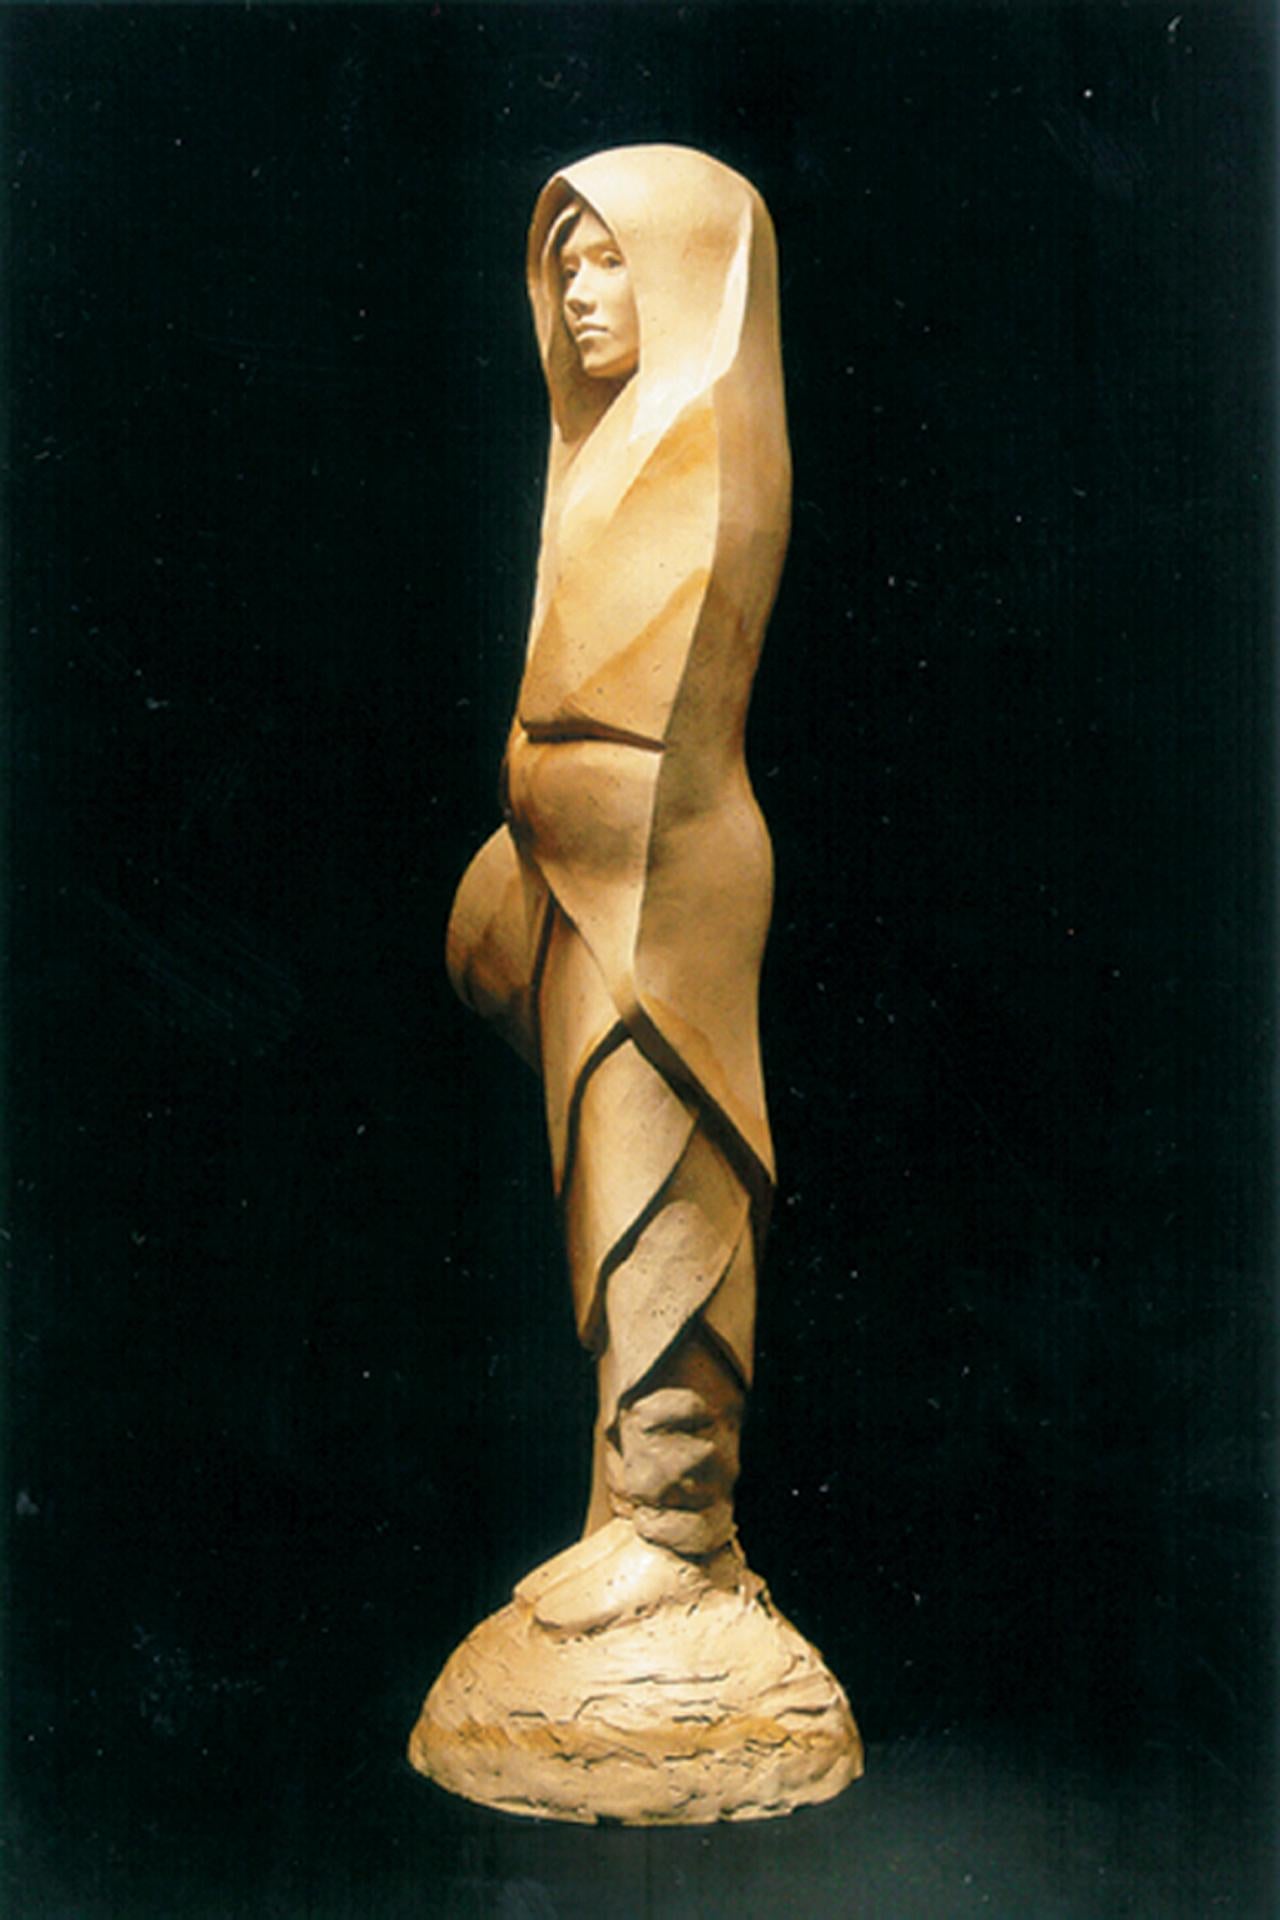 Weiße Hirsche im Herbst von Denny Haskew
Figurative Bronze mit einzigartiger sandsteinartiger Patina. Auf der Grundlage von Sandstein.
30